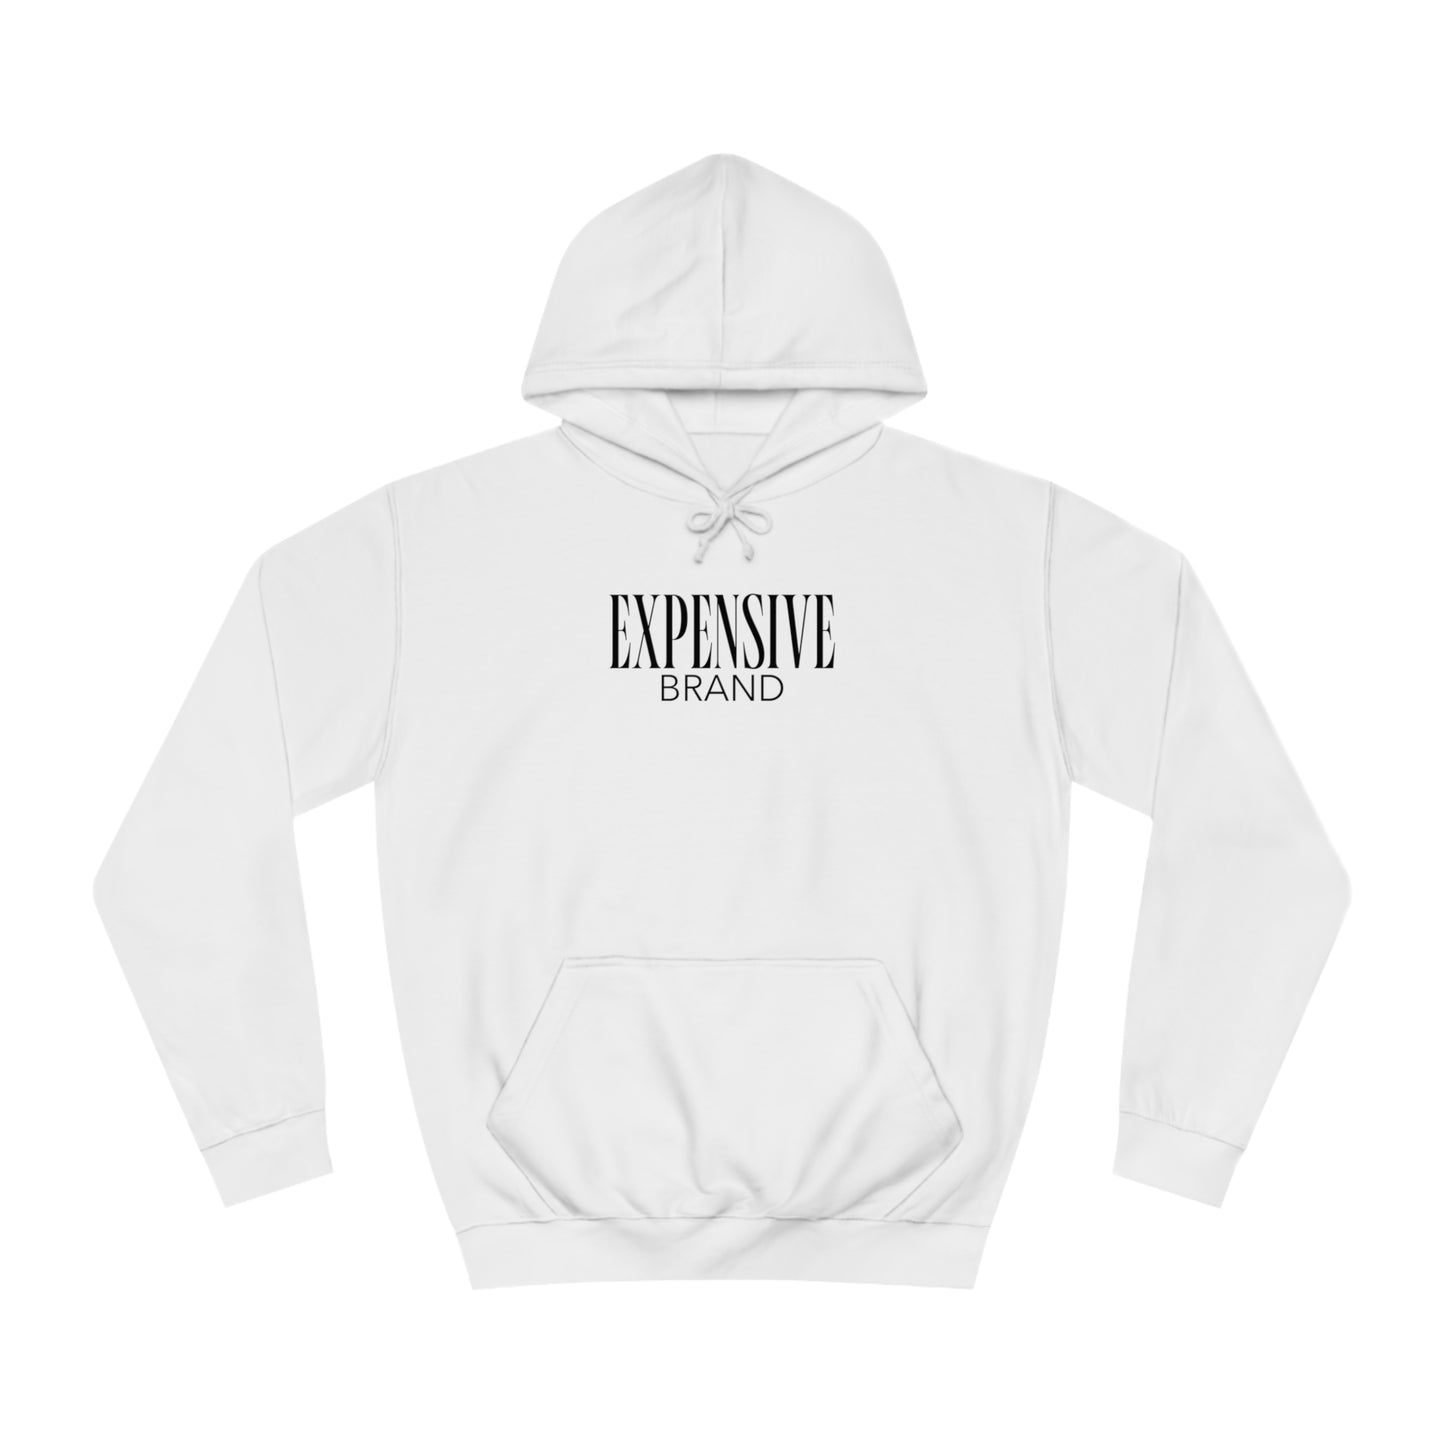 Expensive brand hoodie | Wit | Kleding met humor | Unisex